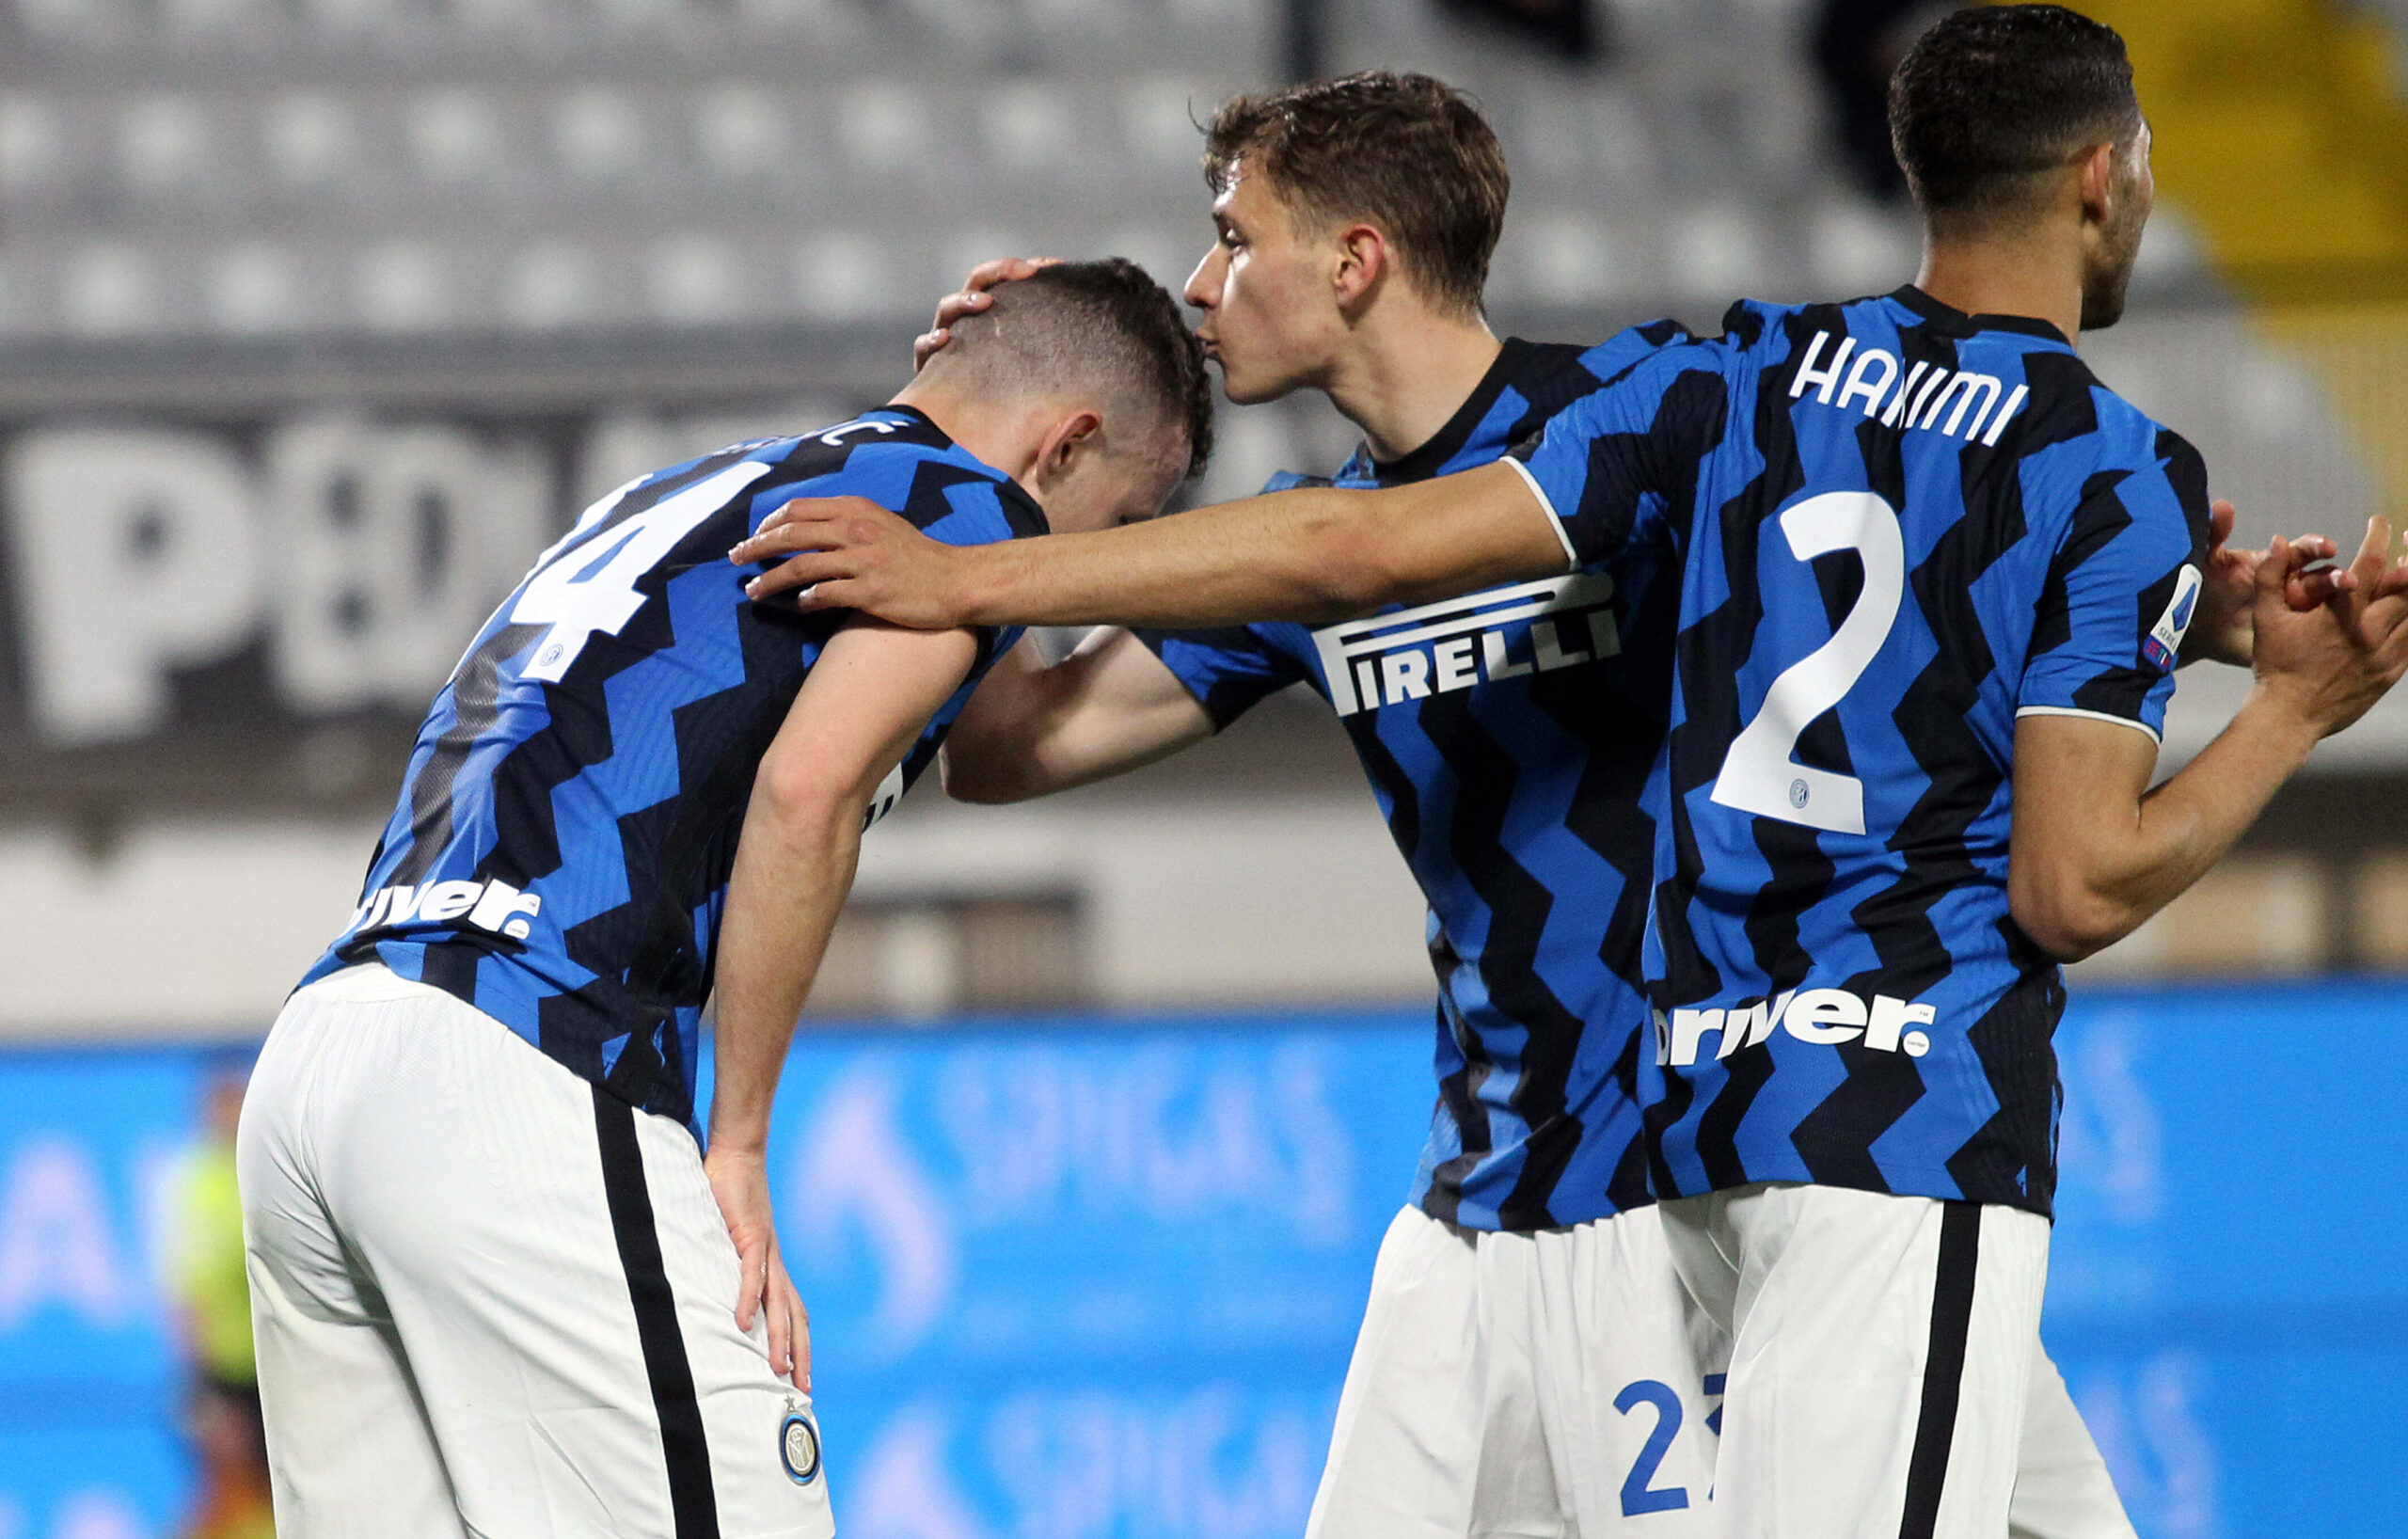 Inter tut sich bei Spezia schwer: Nur ein Remis im Titelkampf